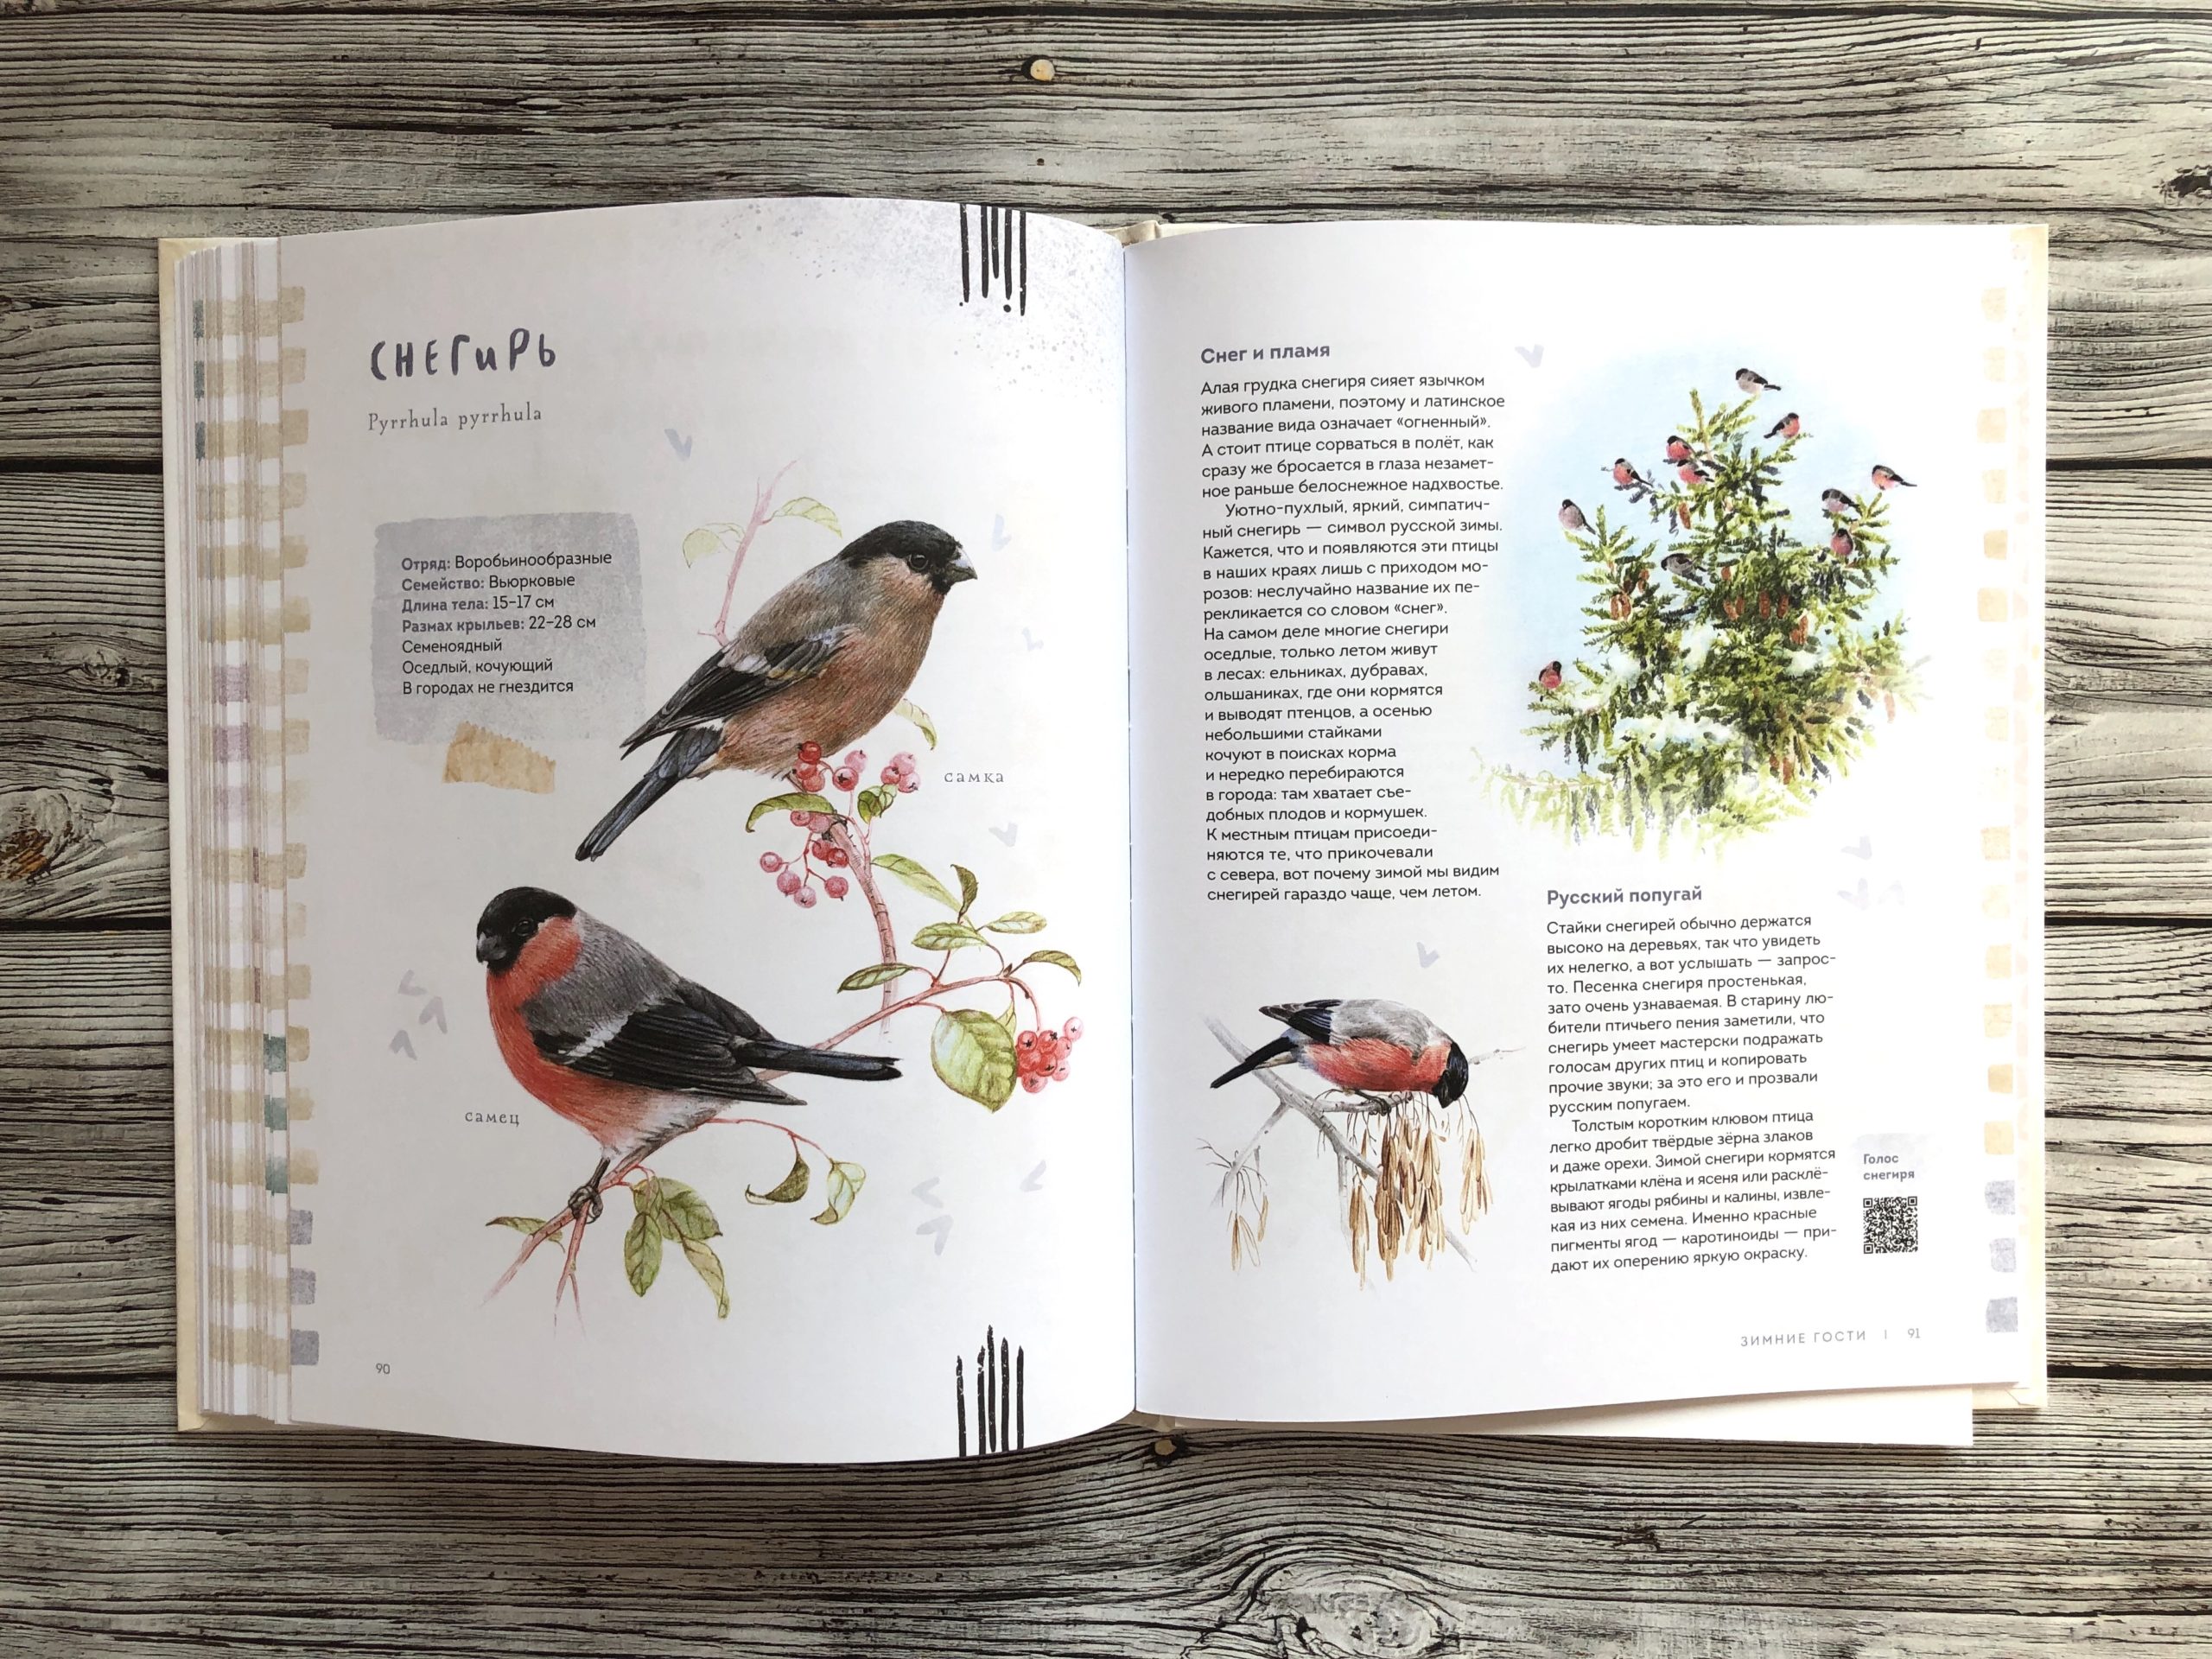 Очень красивая и полезная книга о птицах для детей - Птицы в городе 16